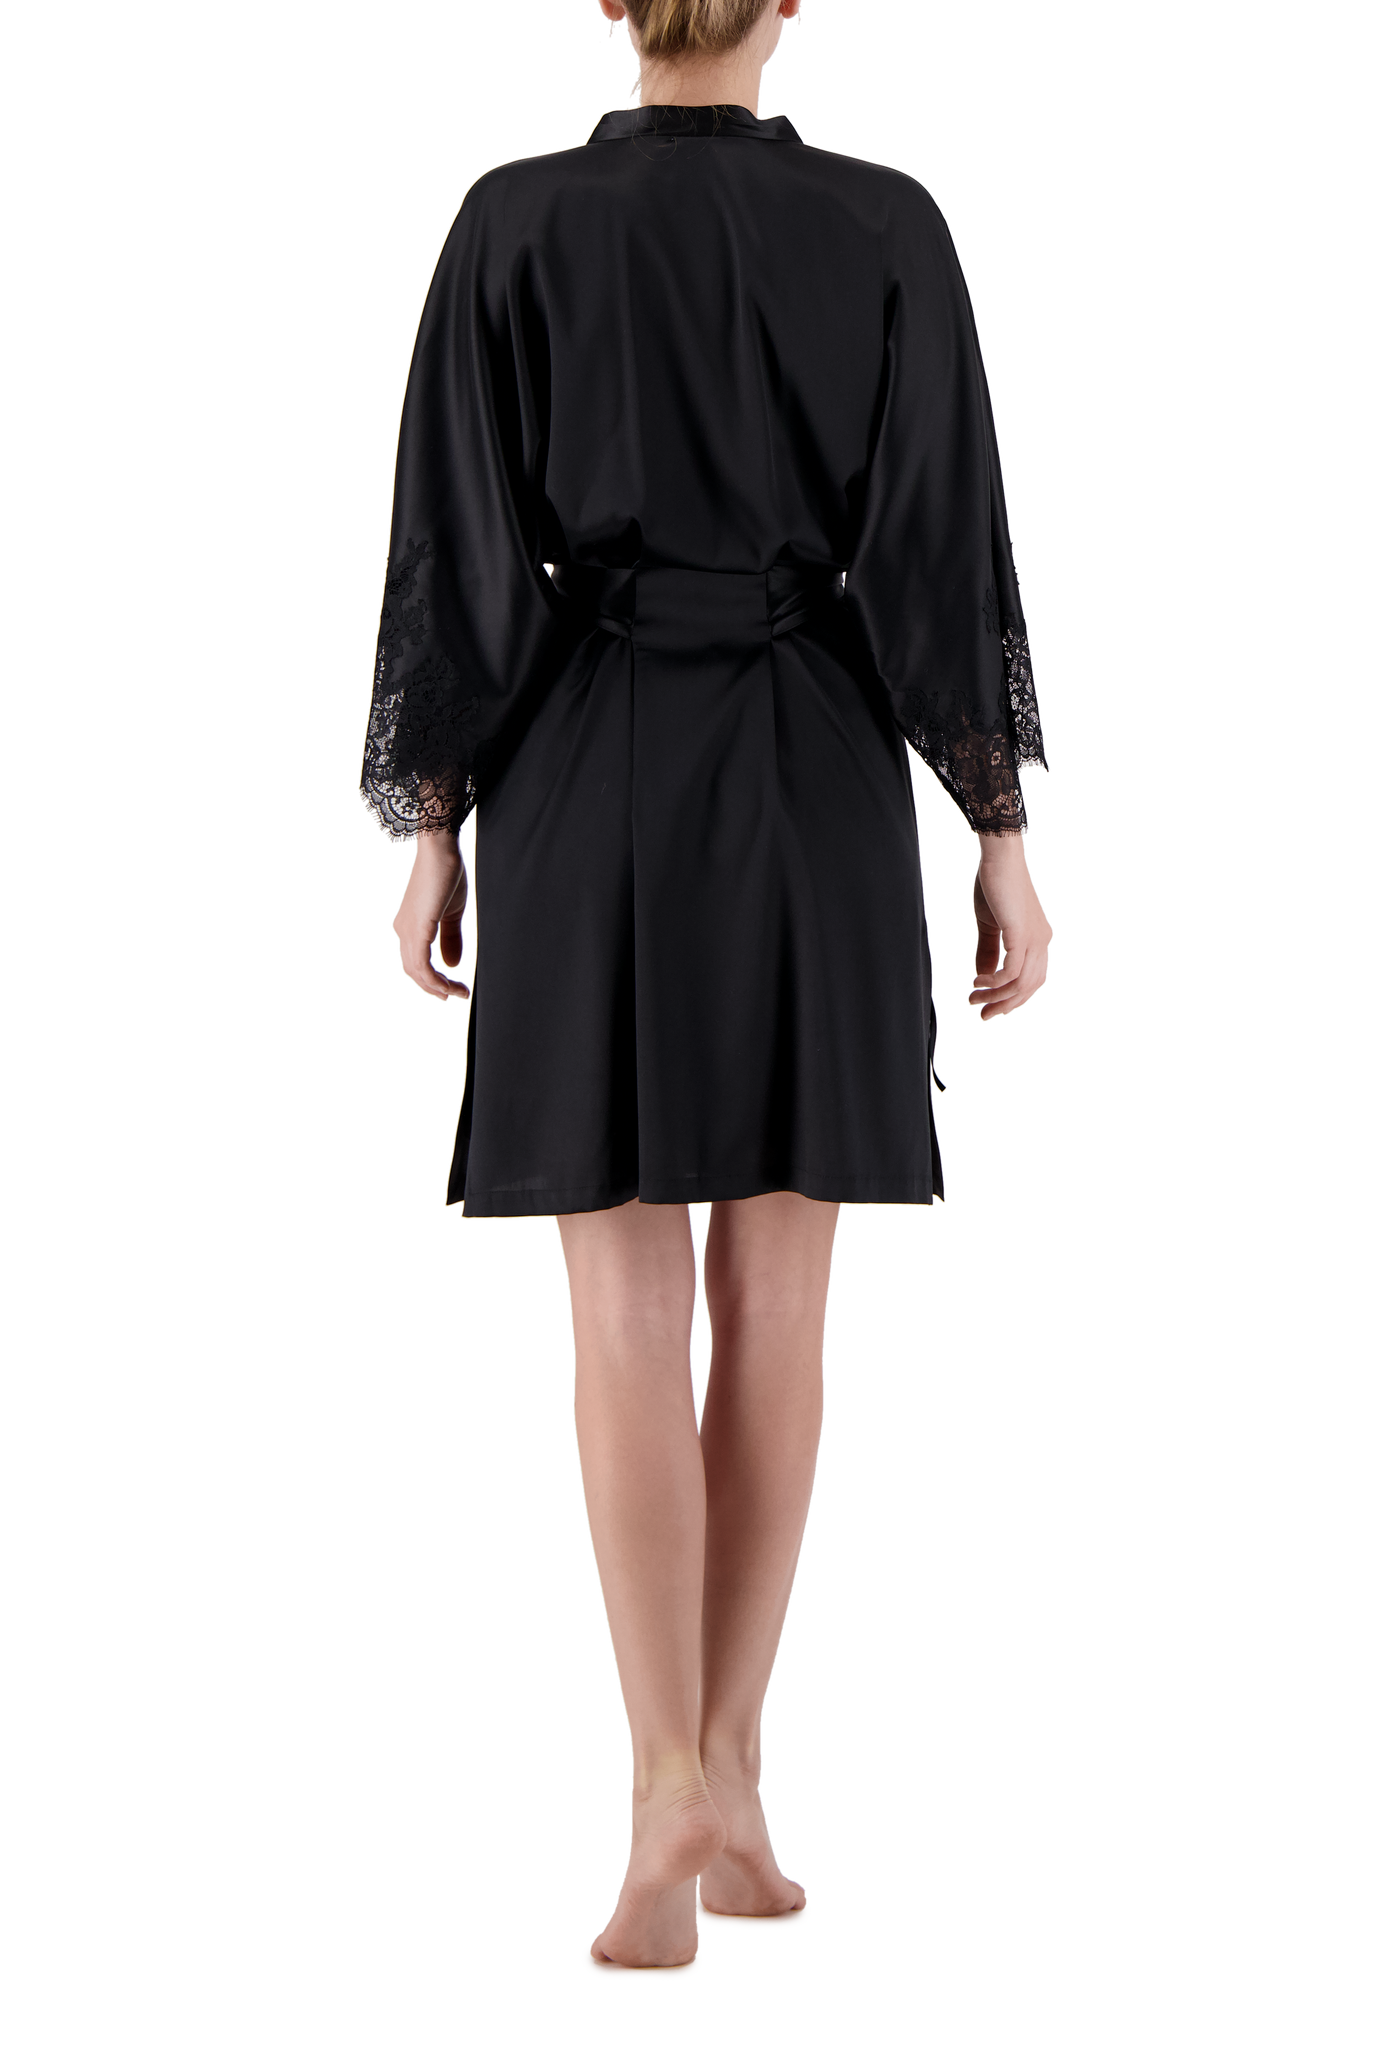 Chantal шелковый короткий халат с кружевом